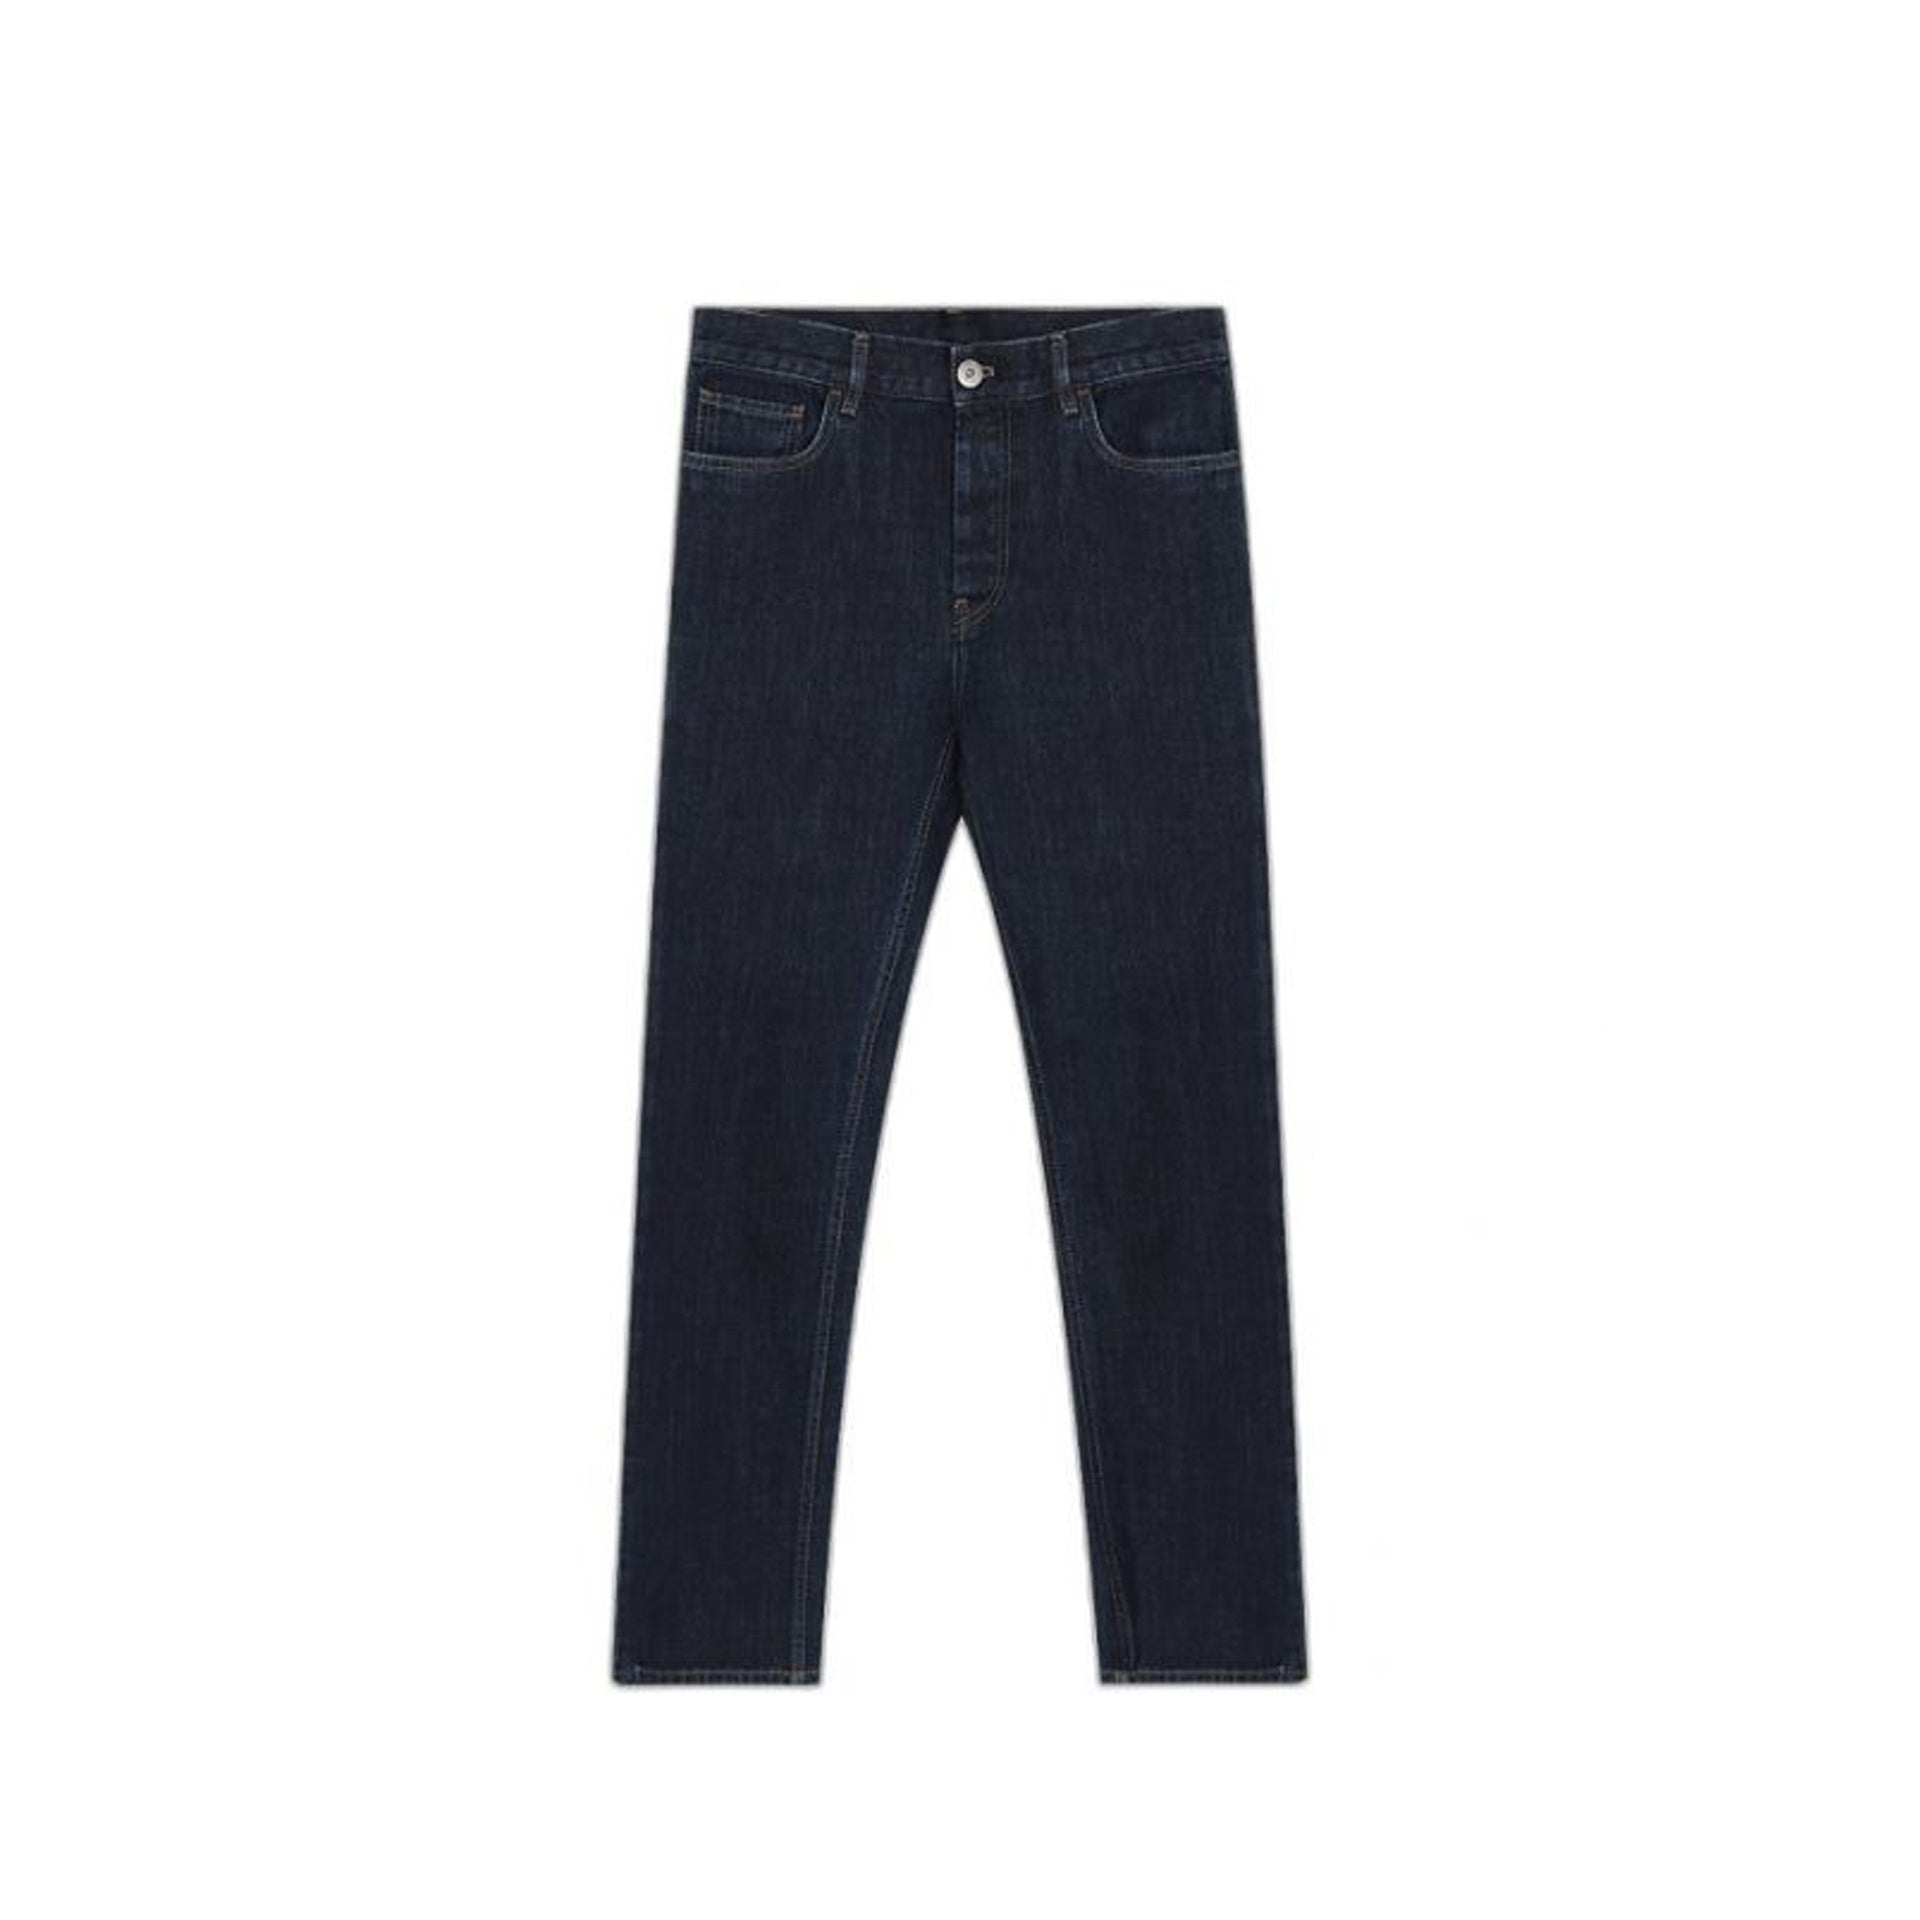 PRADA-Outlet-Sale-Prada Cotton Denim Jeans-MEN CLOTHING-BLUE-36-ARCHIVIST